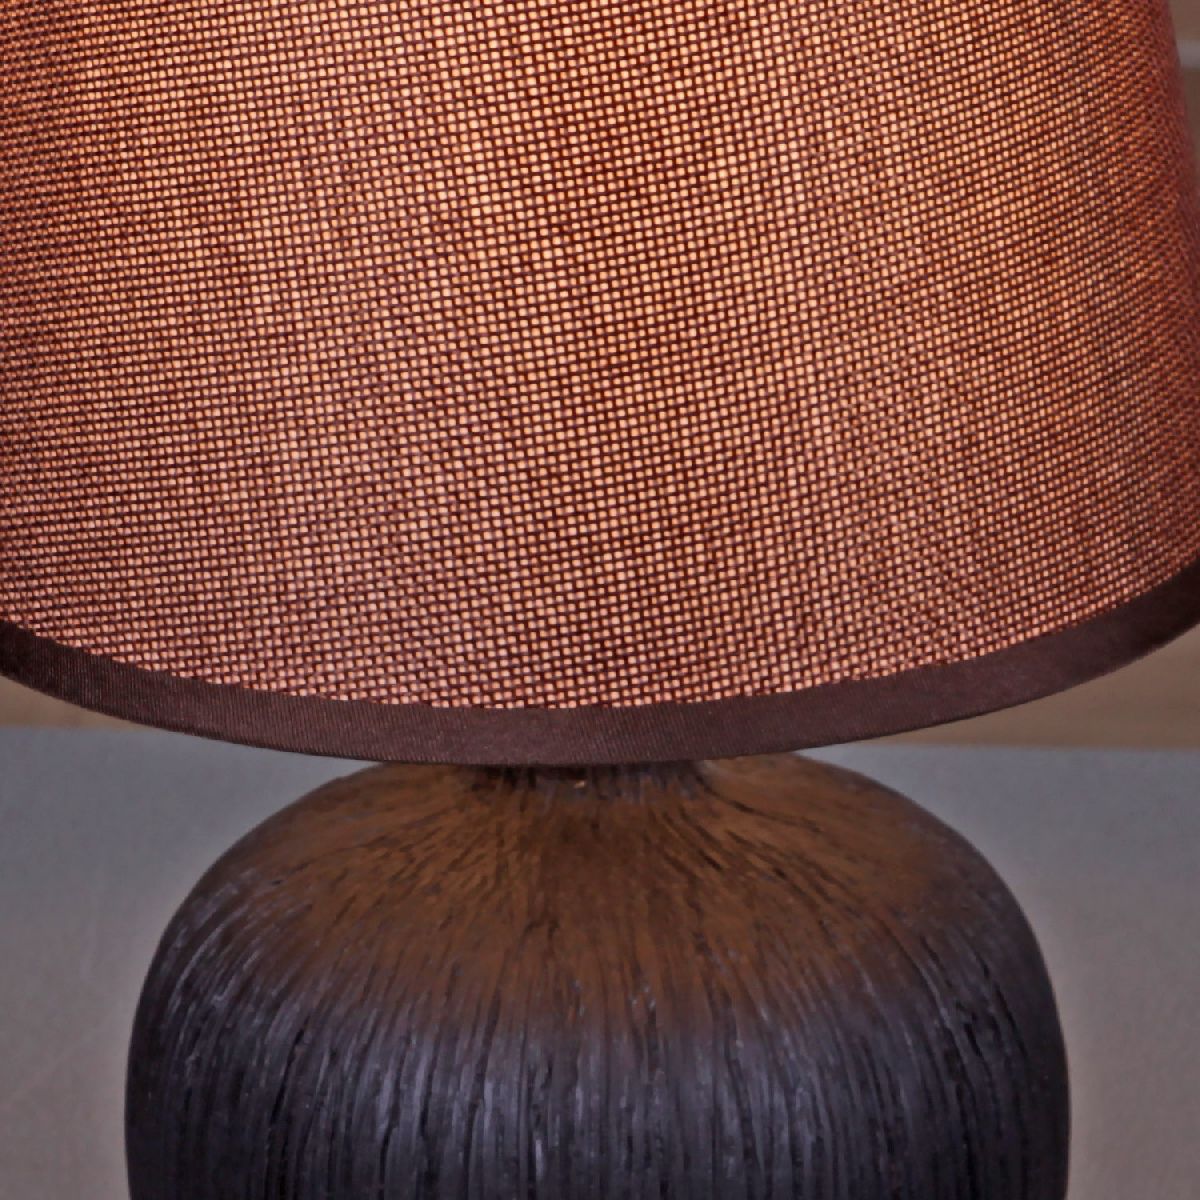 Настольная лампа Reluce 98570-0.7-01 dark brown